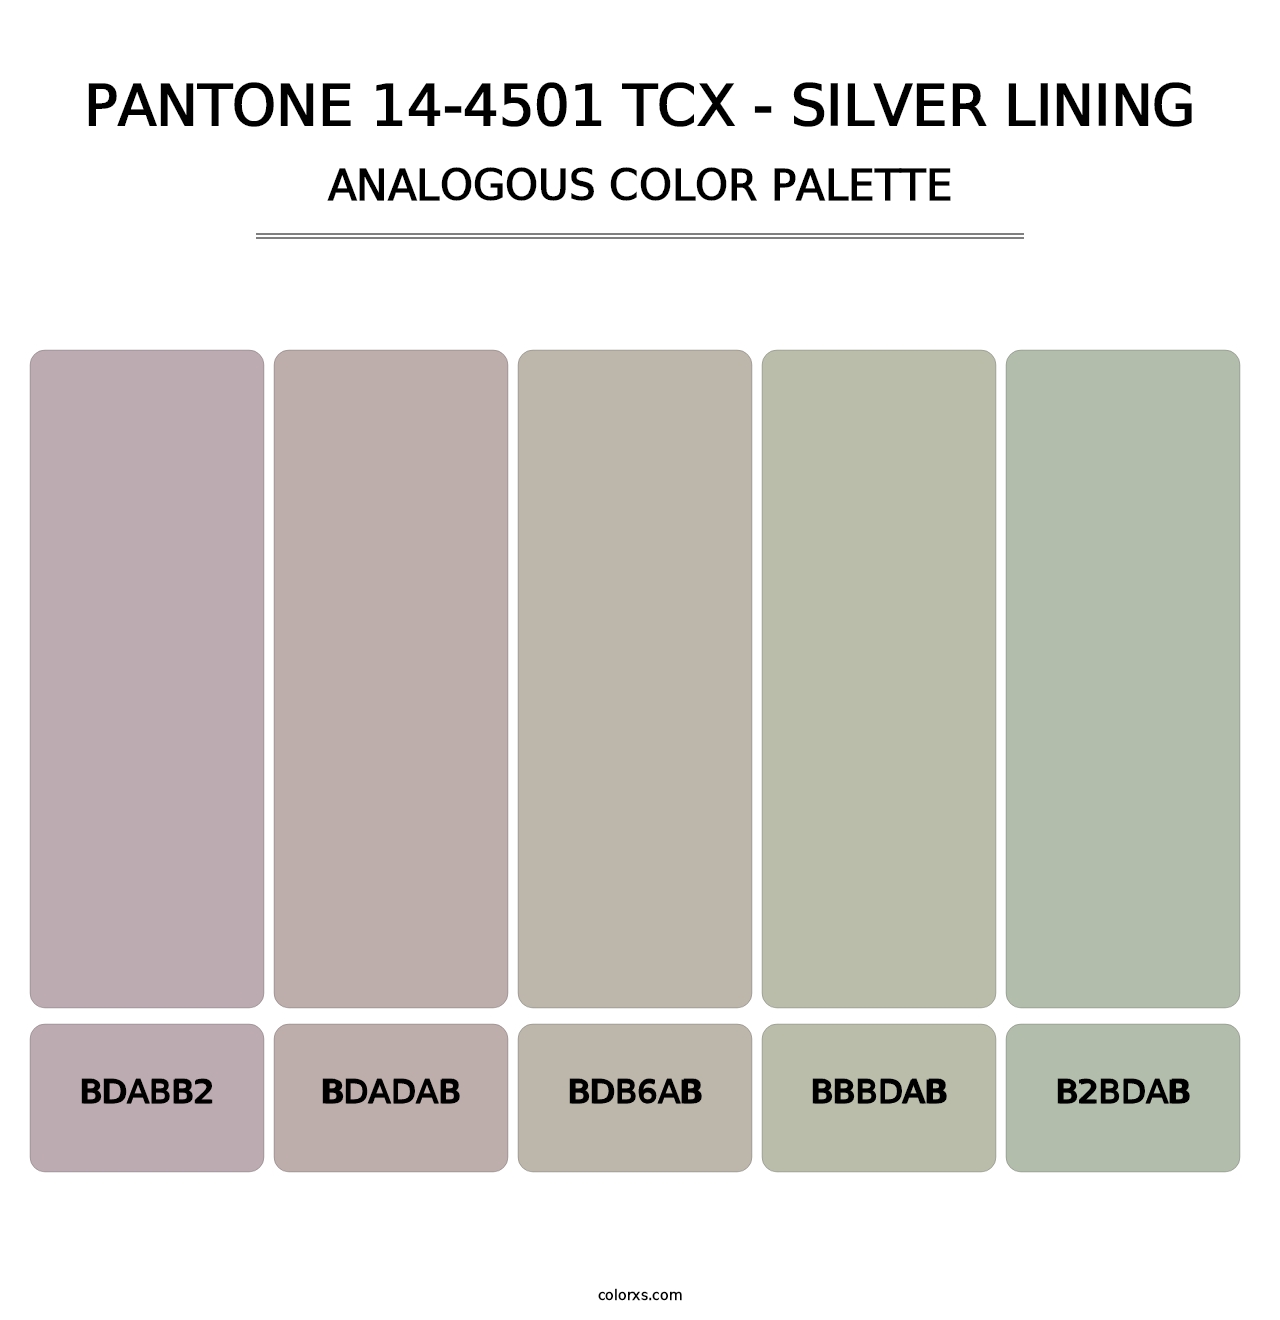 PANTONE 14-4501 TCX - Silver Lining - Analogous Color Palette